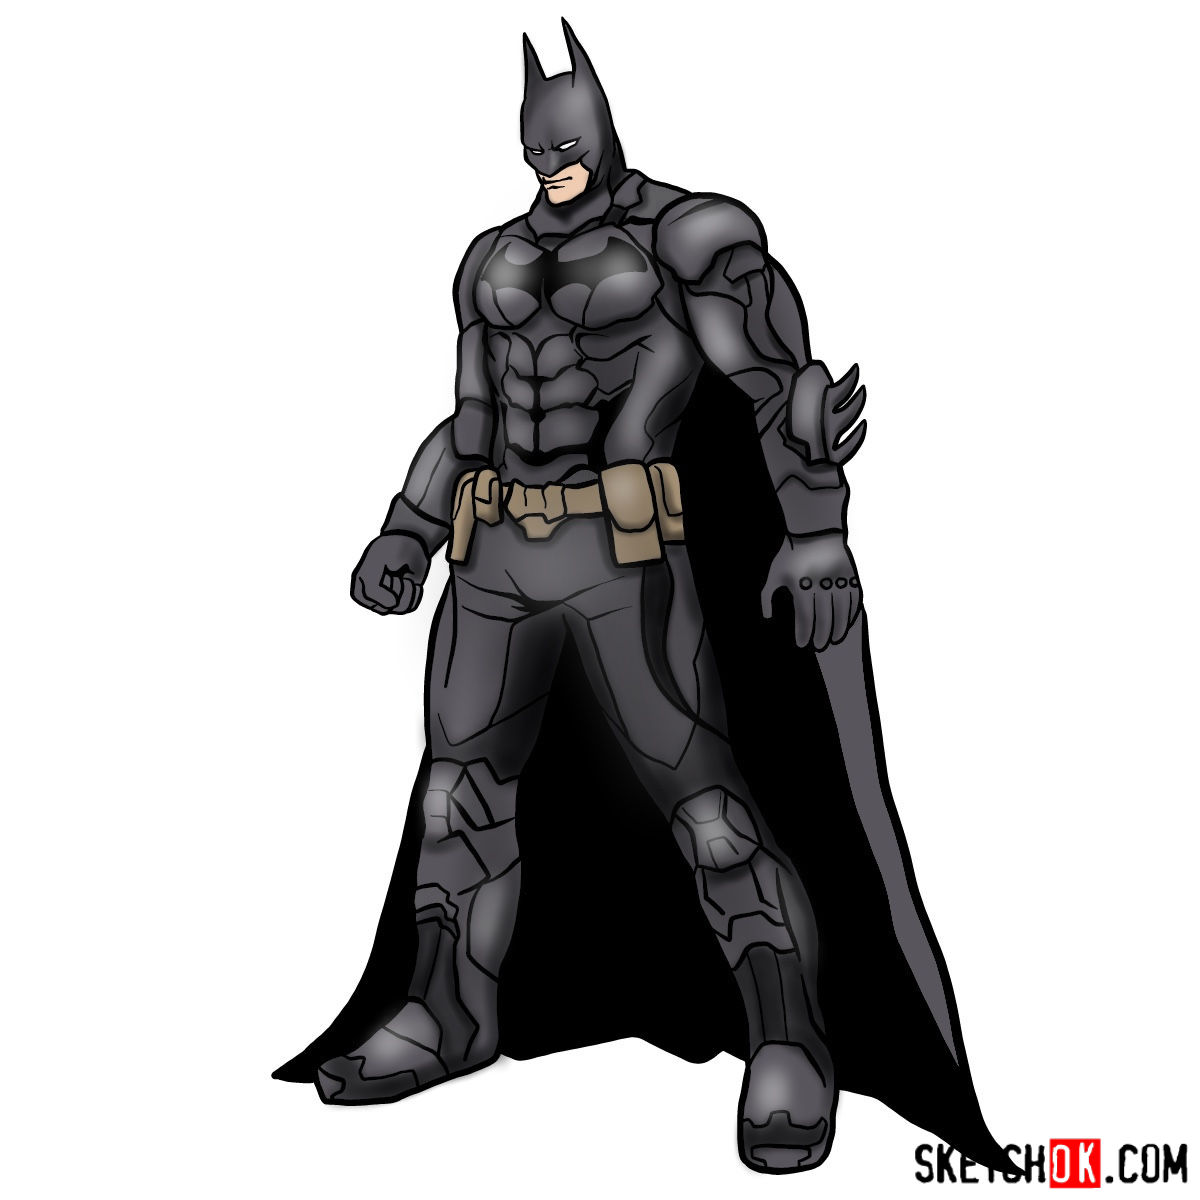 17 How to draw Batman: The Dark Knight drawing tutorials